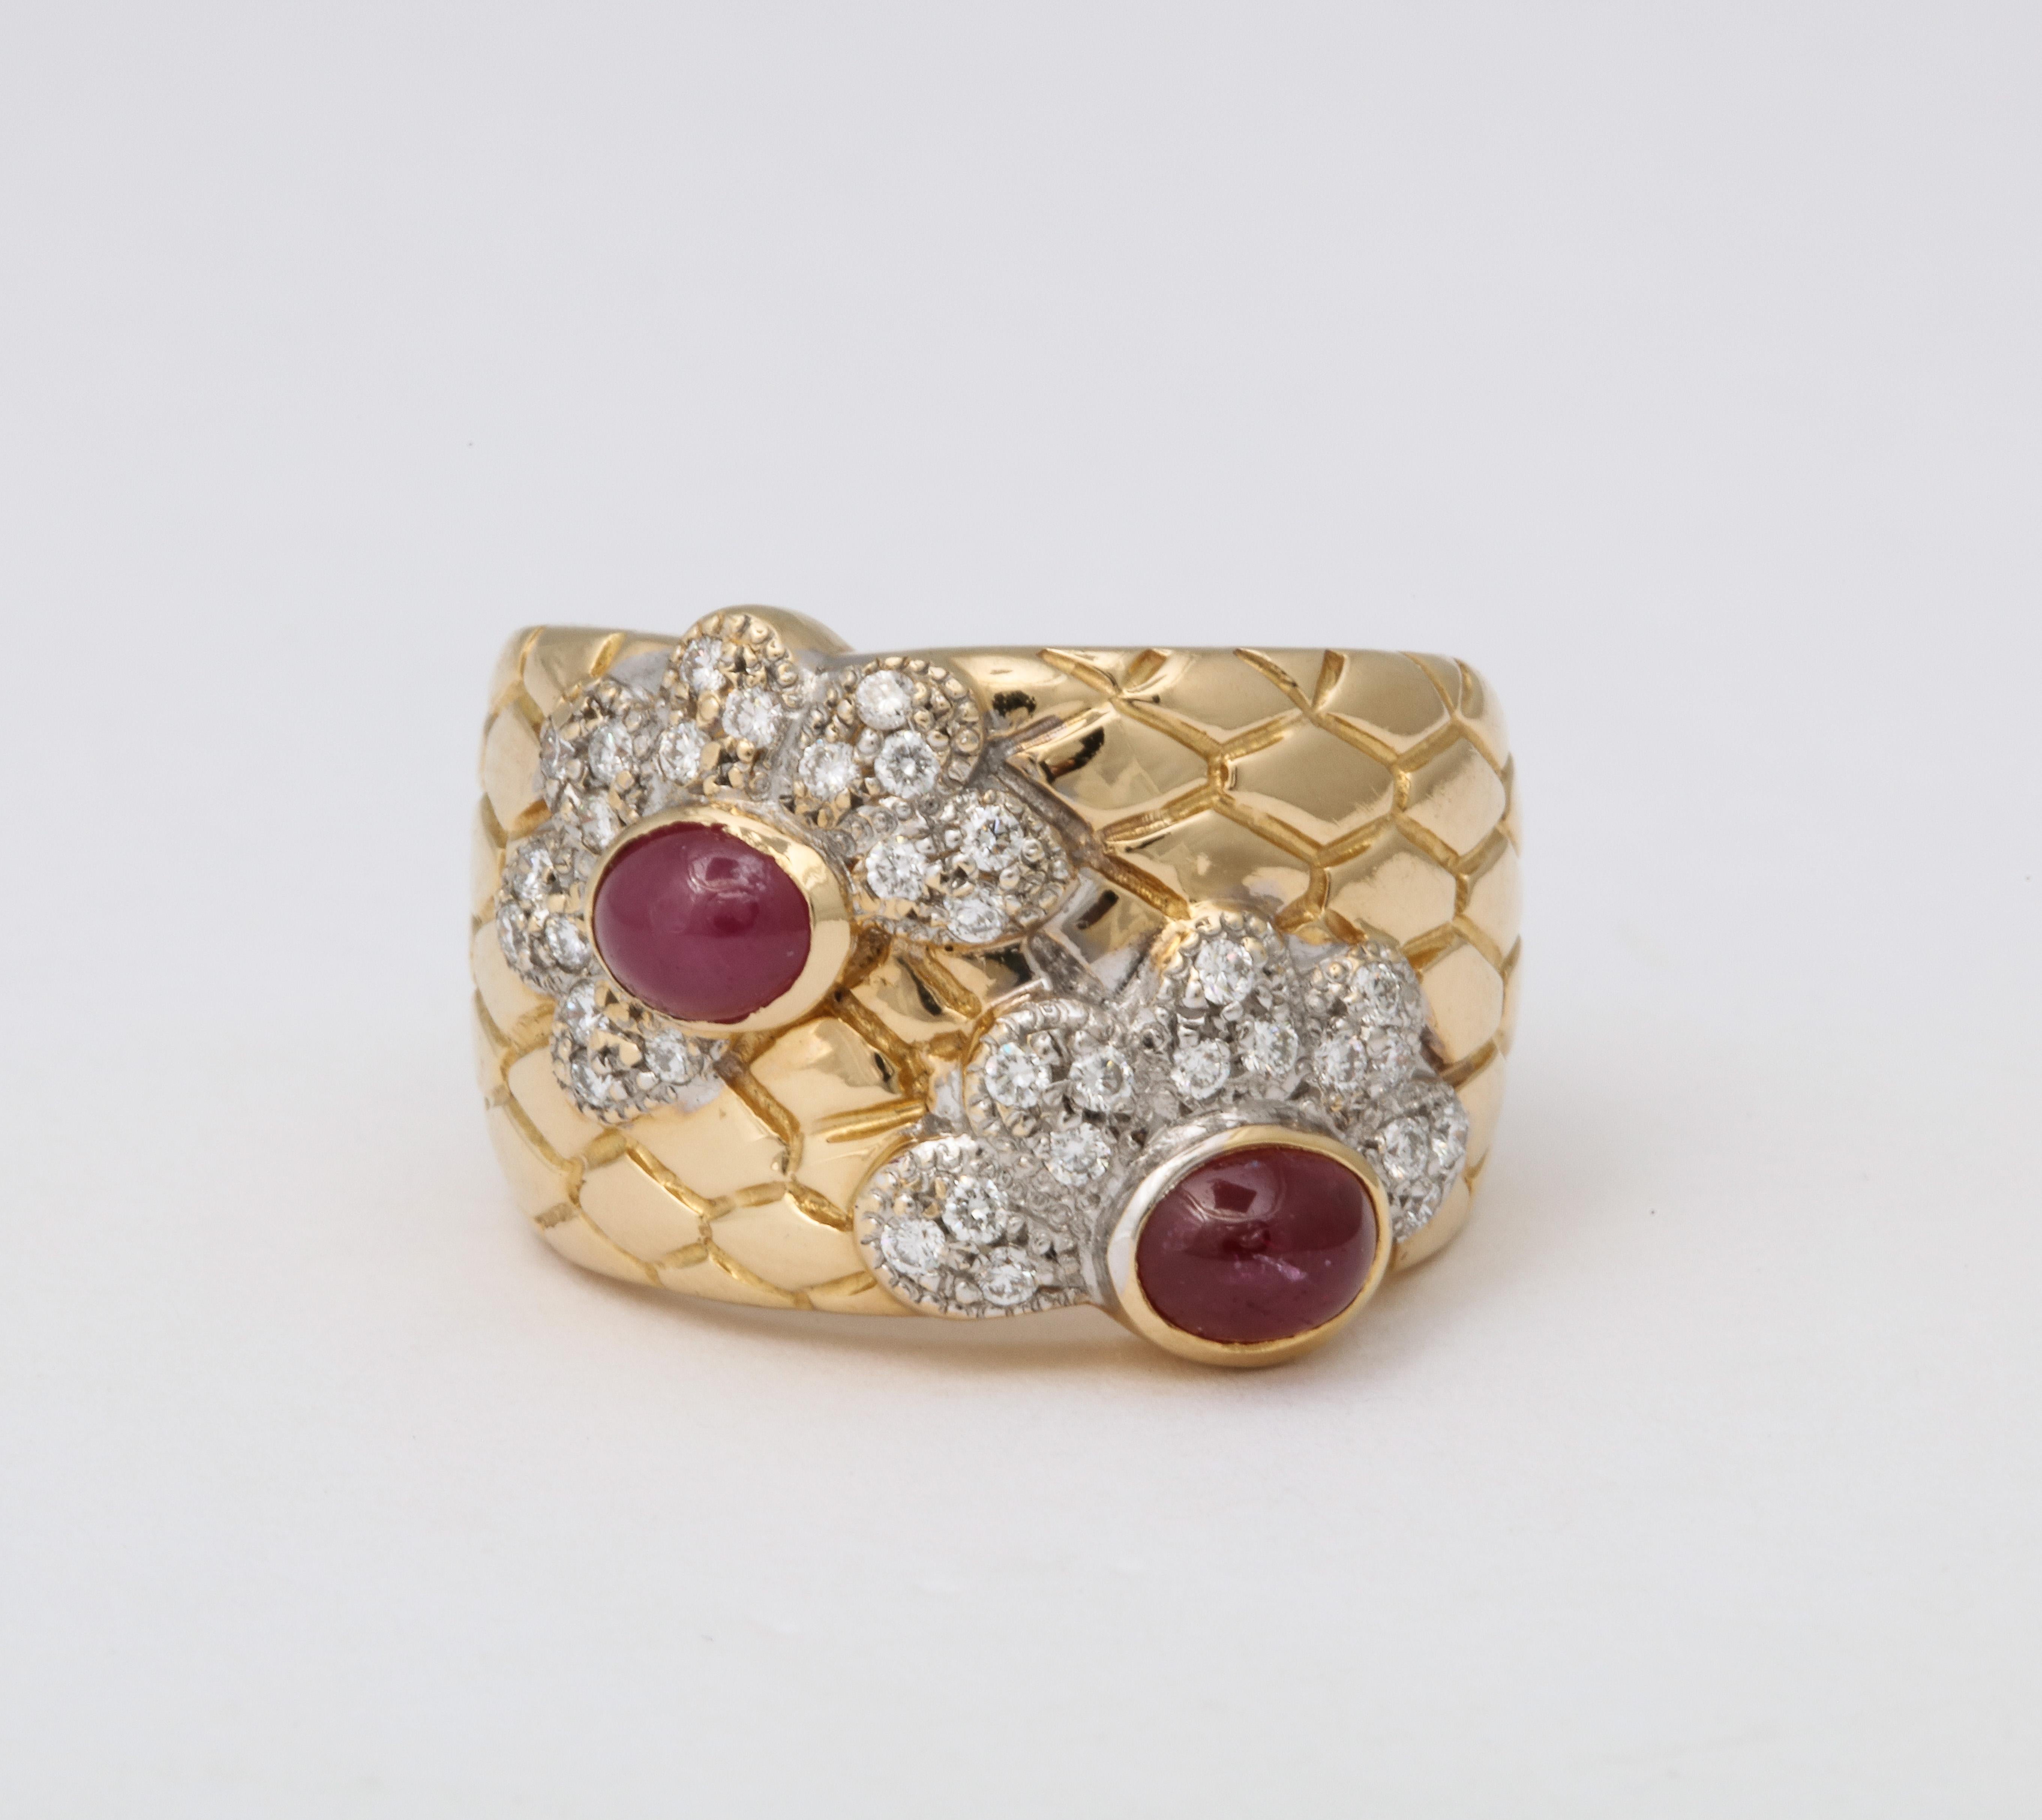 Ein breites Rubin- und Diamantband mit einzigartigem Schlangenschuppenmuster.

.84 Karat Rubin

.50 Karat runde Diamanten im Brillantschliff

Ungefähr 14,5 mm breit

gefasst in 18k Weißgold 